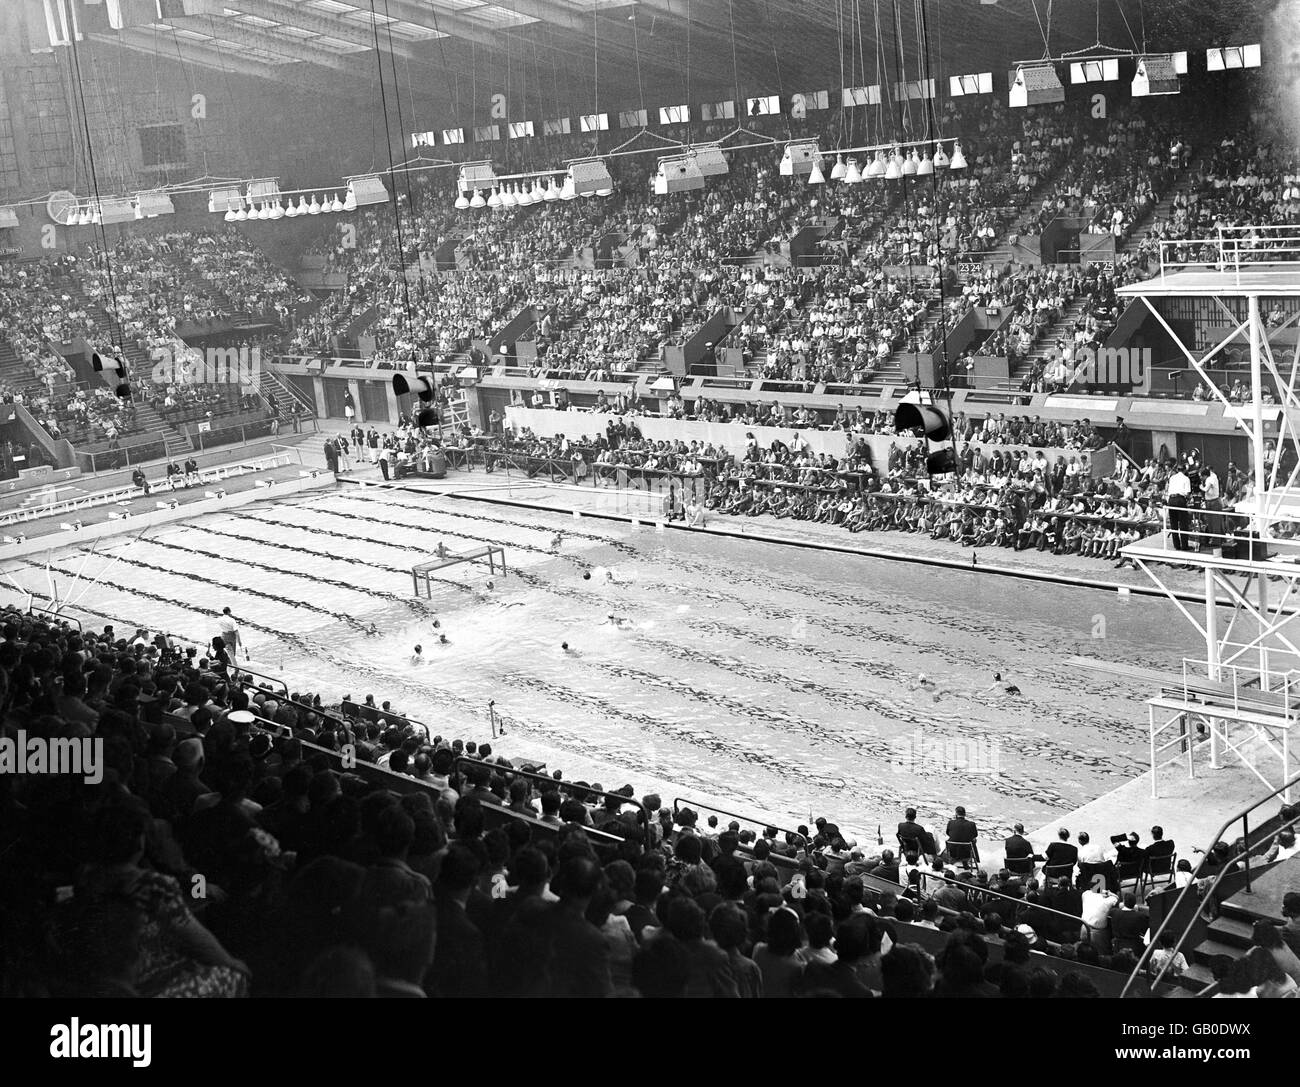 Olympische Spiele 1948 In London - Wasserpolo - Empire Pool. Schweden attackiert das französische Tor während eines Spiels in der Finalgruppe und entscheidet sich für den 5. Bis 8. Platz. Stockfoto